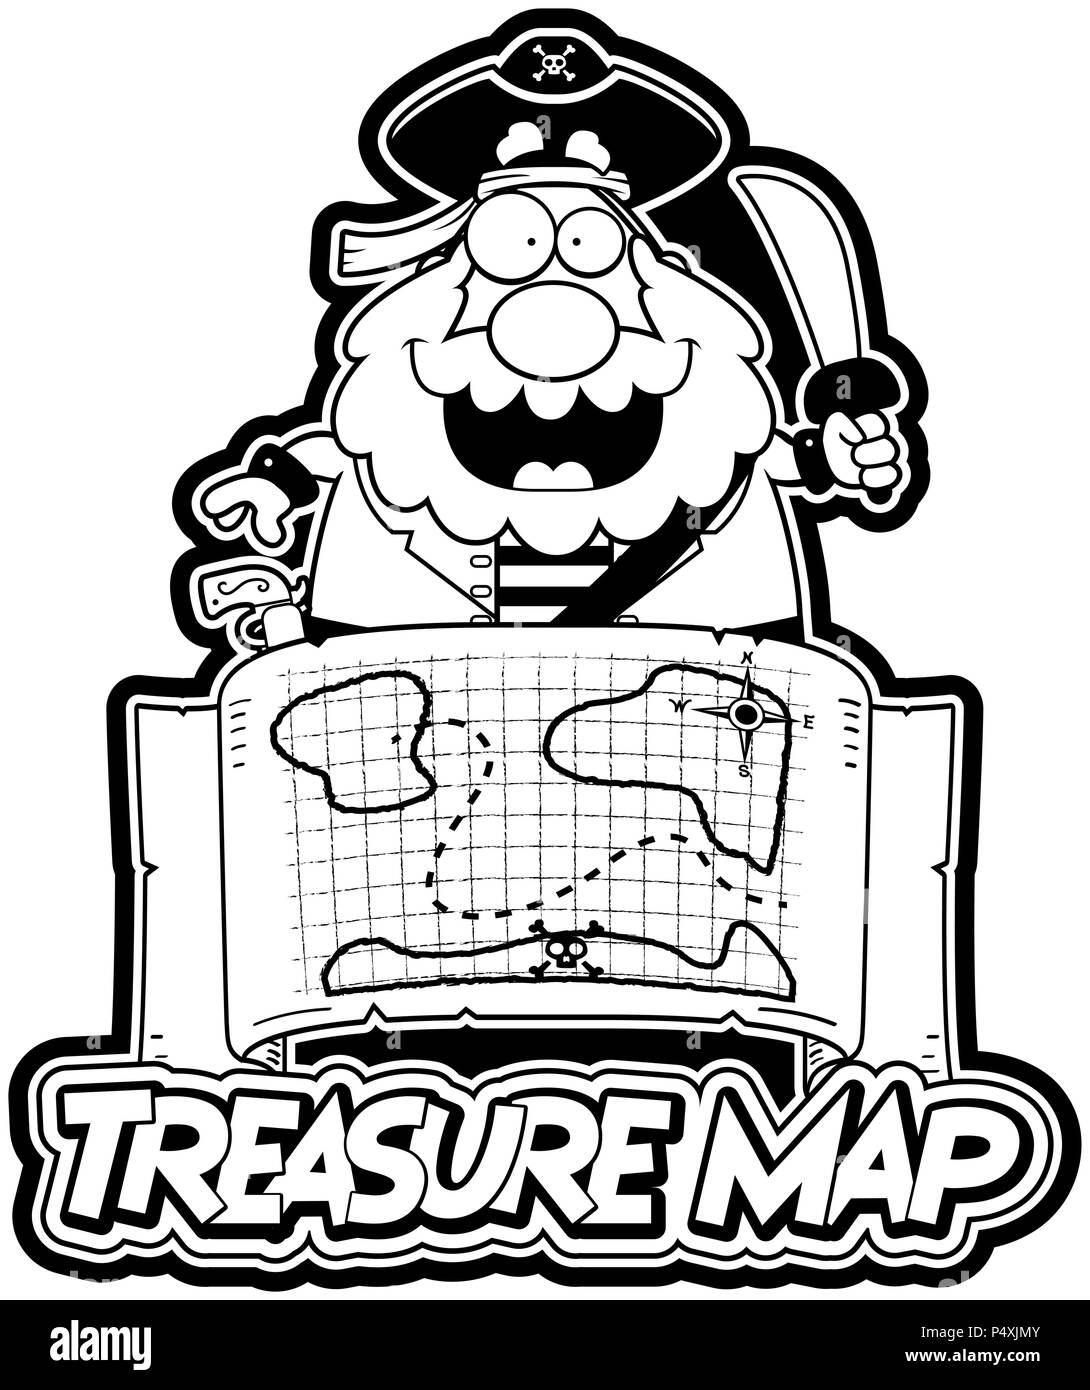 Illustration d'une caricature d'un pirate avec une carte au trésor la carte au trésor et de texte. Illustration de Vecteur